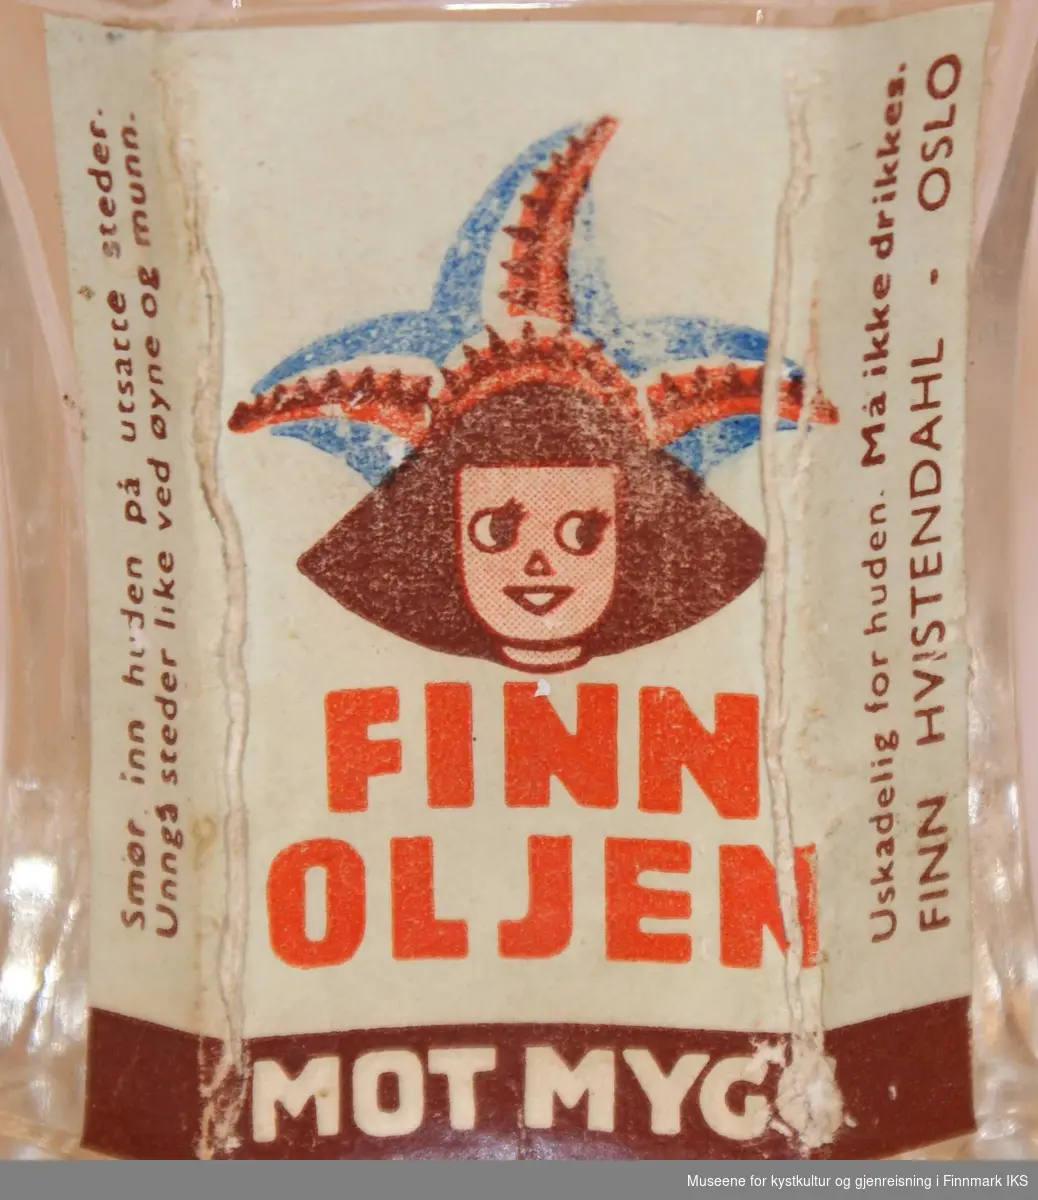 På etiketten på fremsiden av flasken er det avbildet en tegning av et samisk jentebarn med samisk lue. Jenta har brunt hår og rosa ansikt, og lua er i fargene blått, lys blågrått, rødt og brunt.